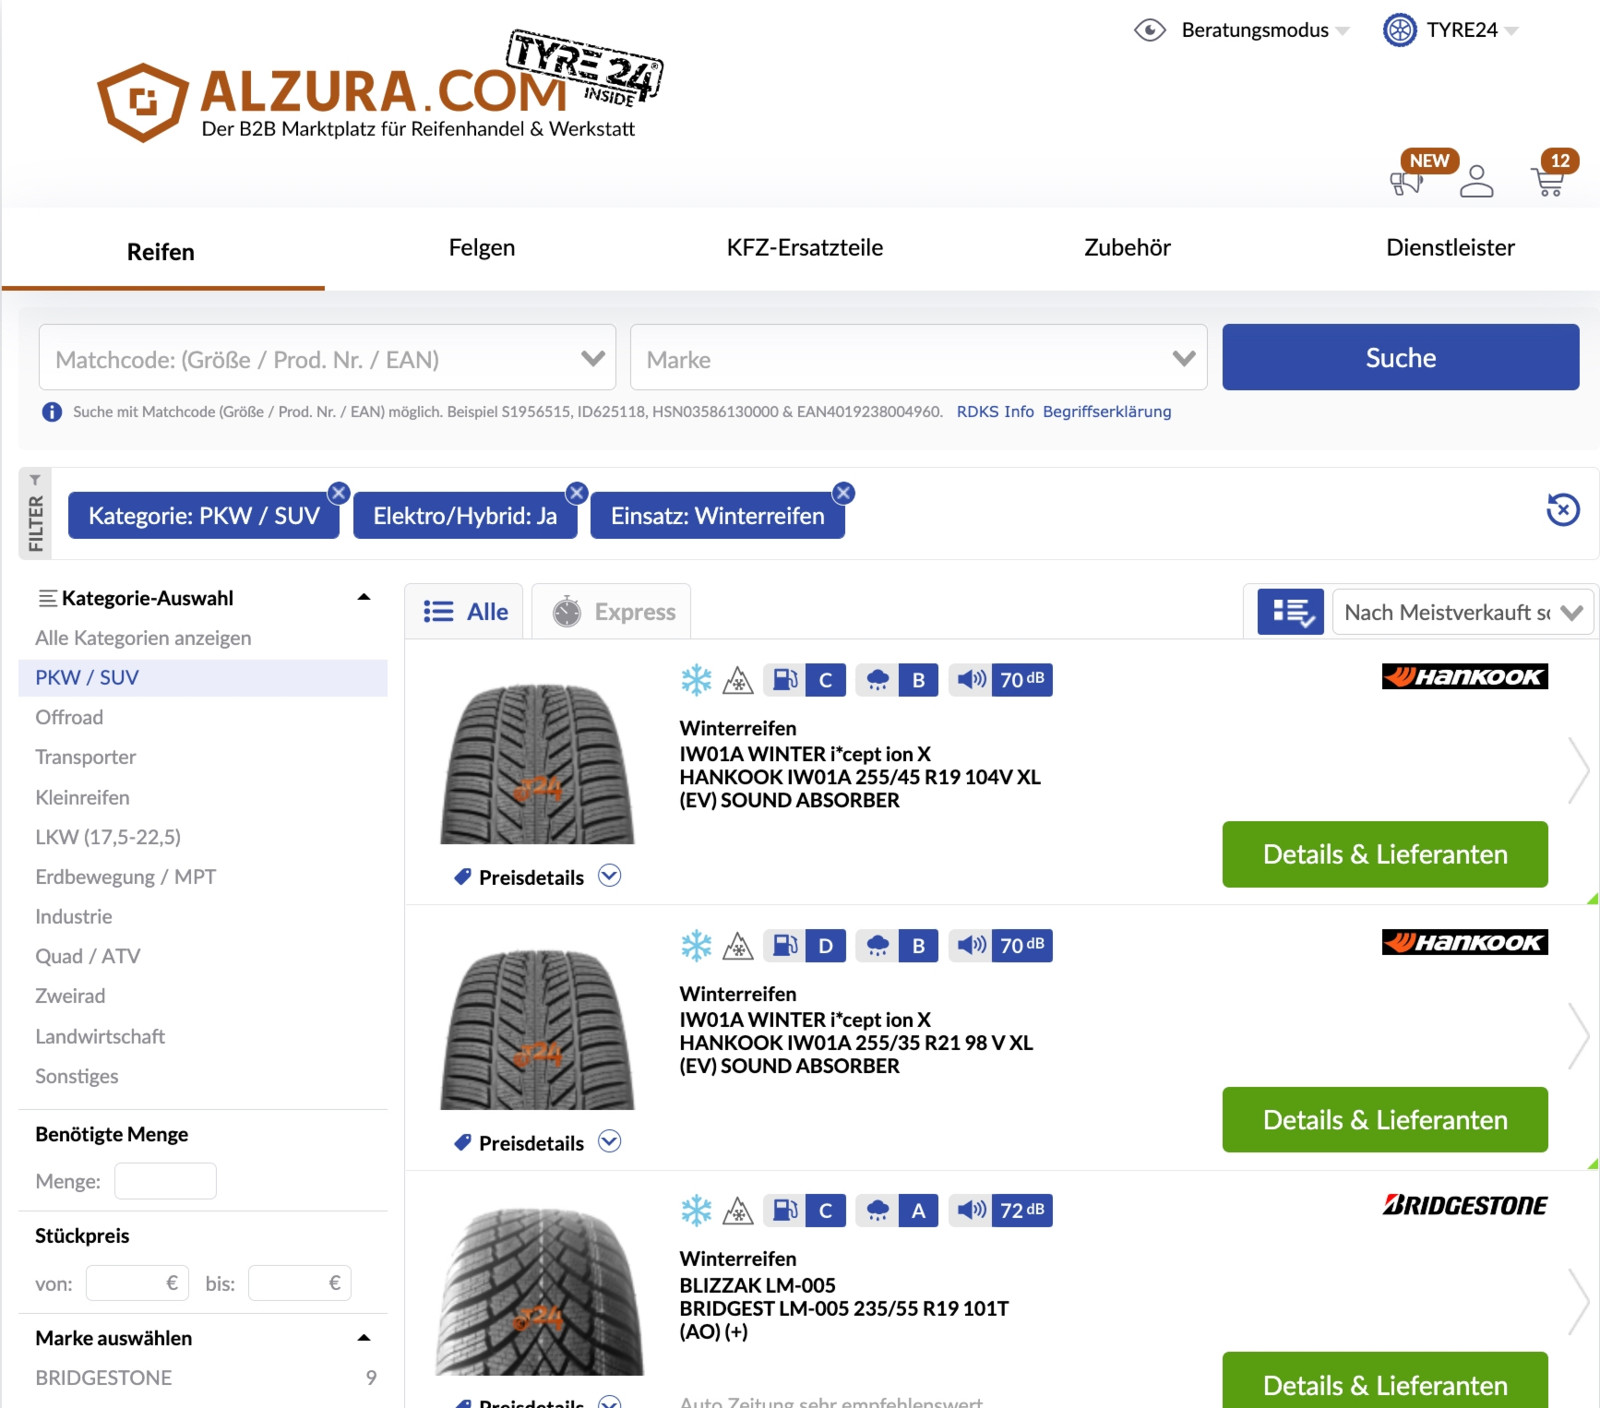 Für E- und Hybridfahrzeuge geeignete Reifen sollen sich bei Alzura Tyre24 jetzt noch gezielter suchen lassen. 